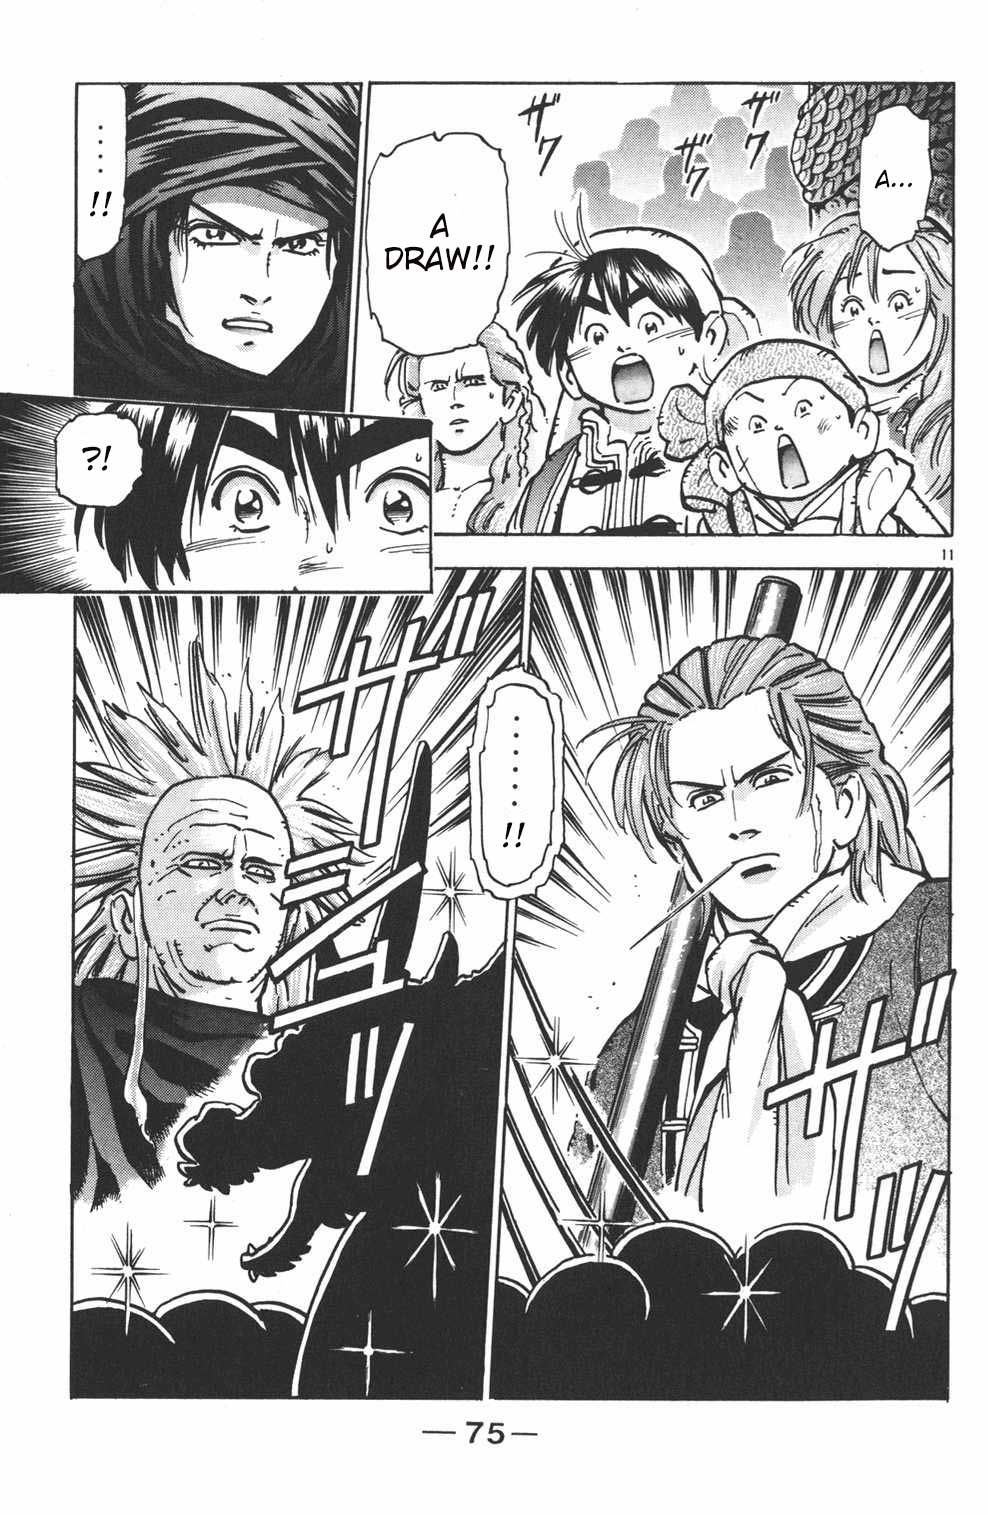 Shin Chuuka Ichiban! Vol. 5 Ch. 37 Spear and Shield